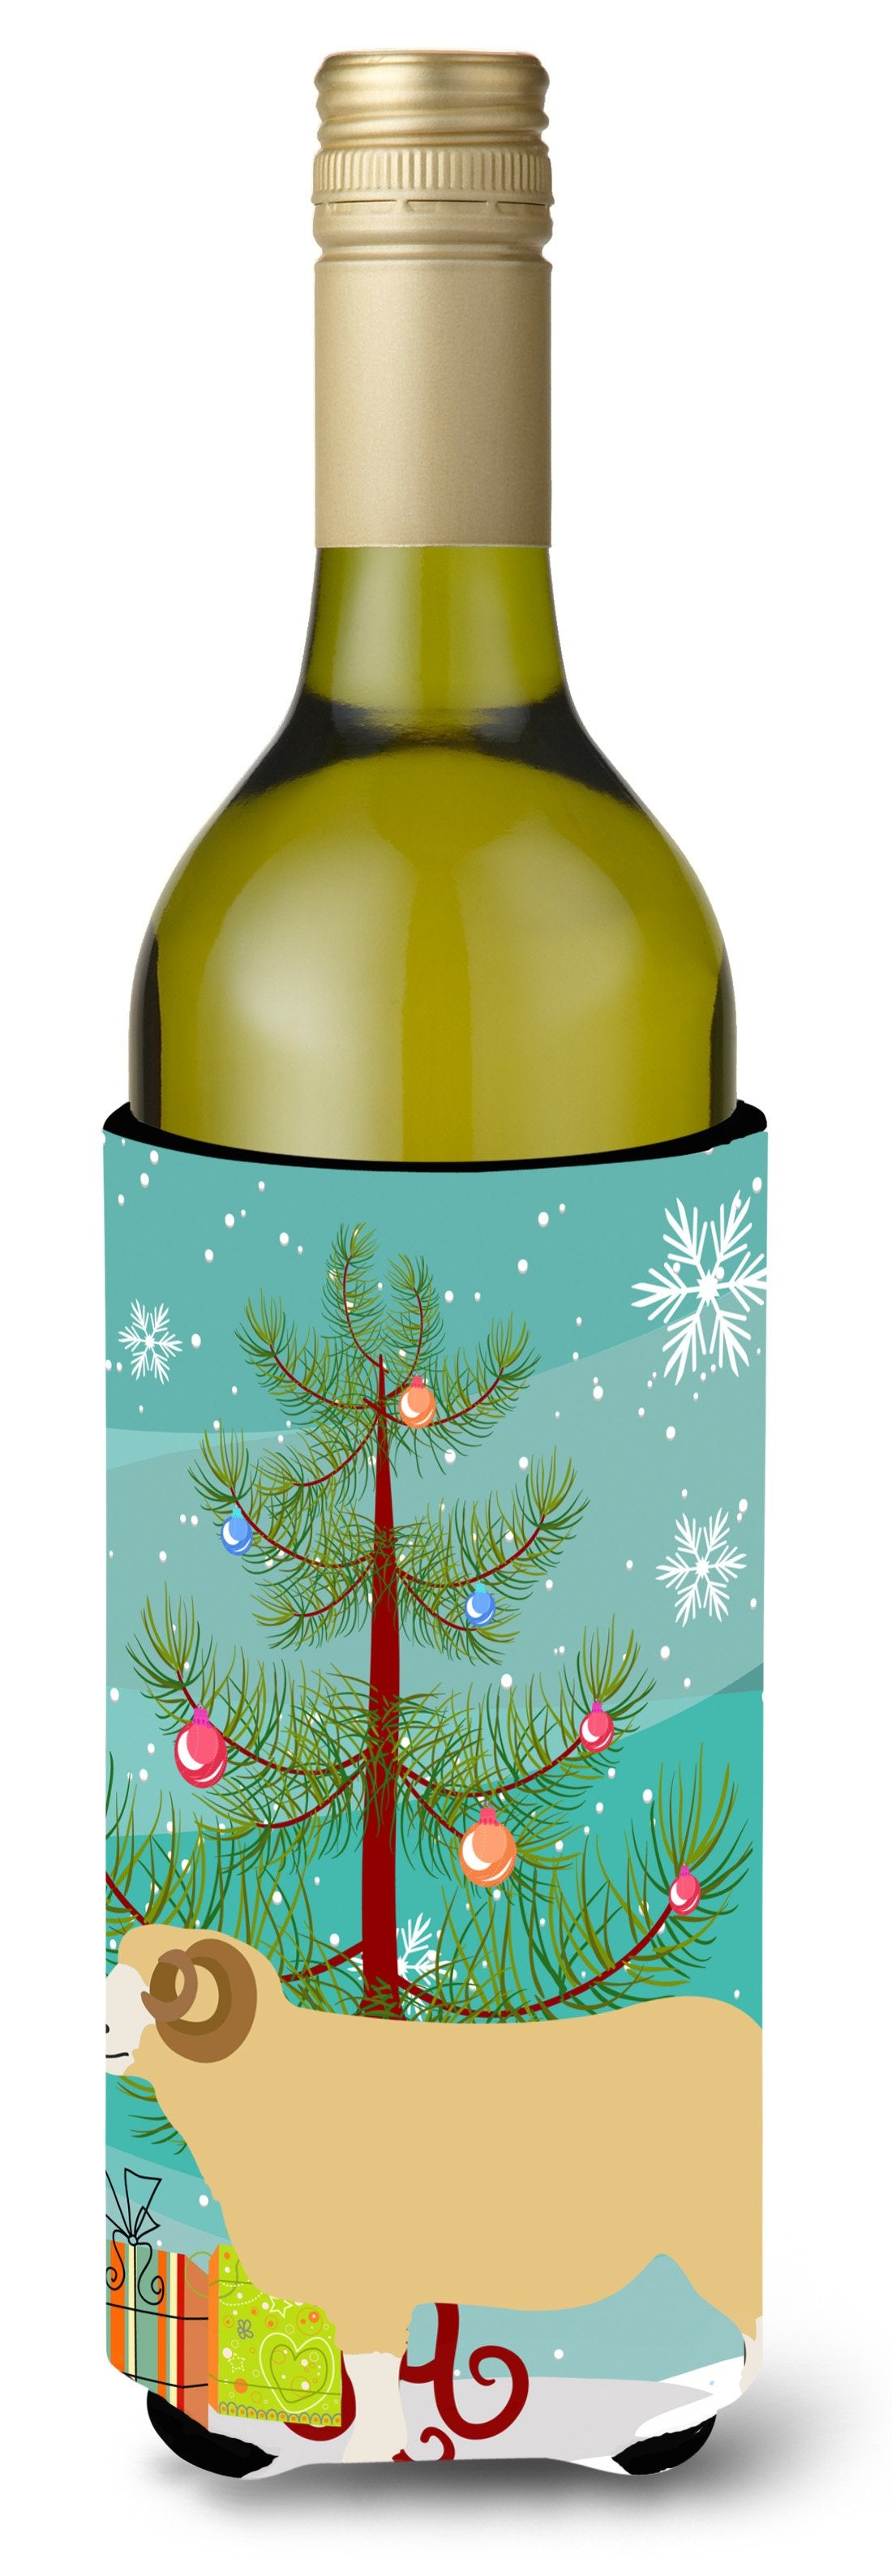 Horned Dorset Sheep Christmas Wine Bottle Beverge Insulator Hugger BB9347LITERK by Caroline's Treasures